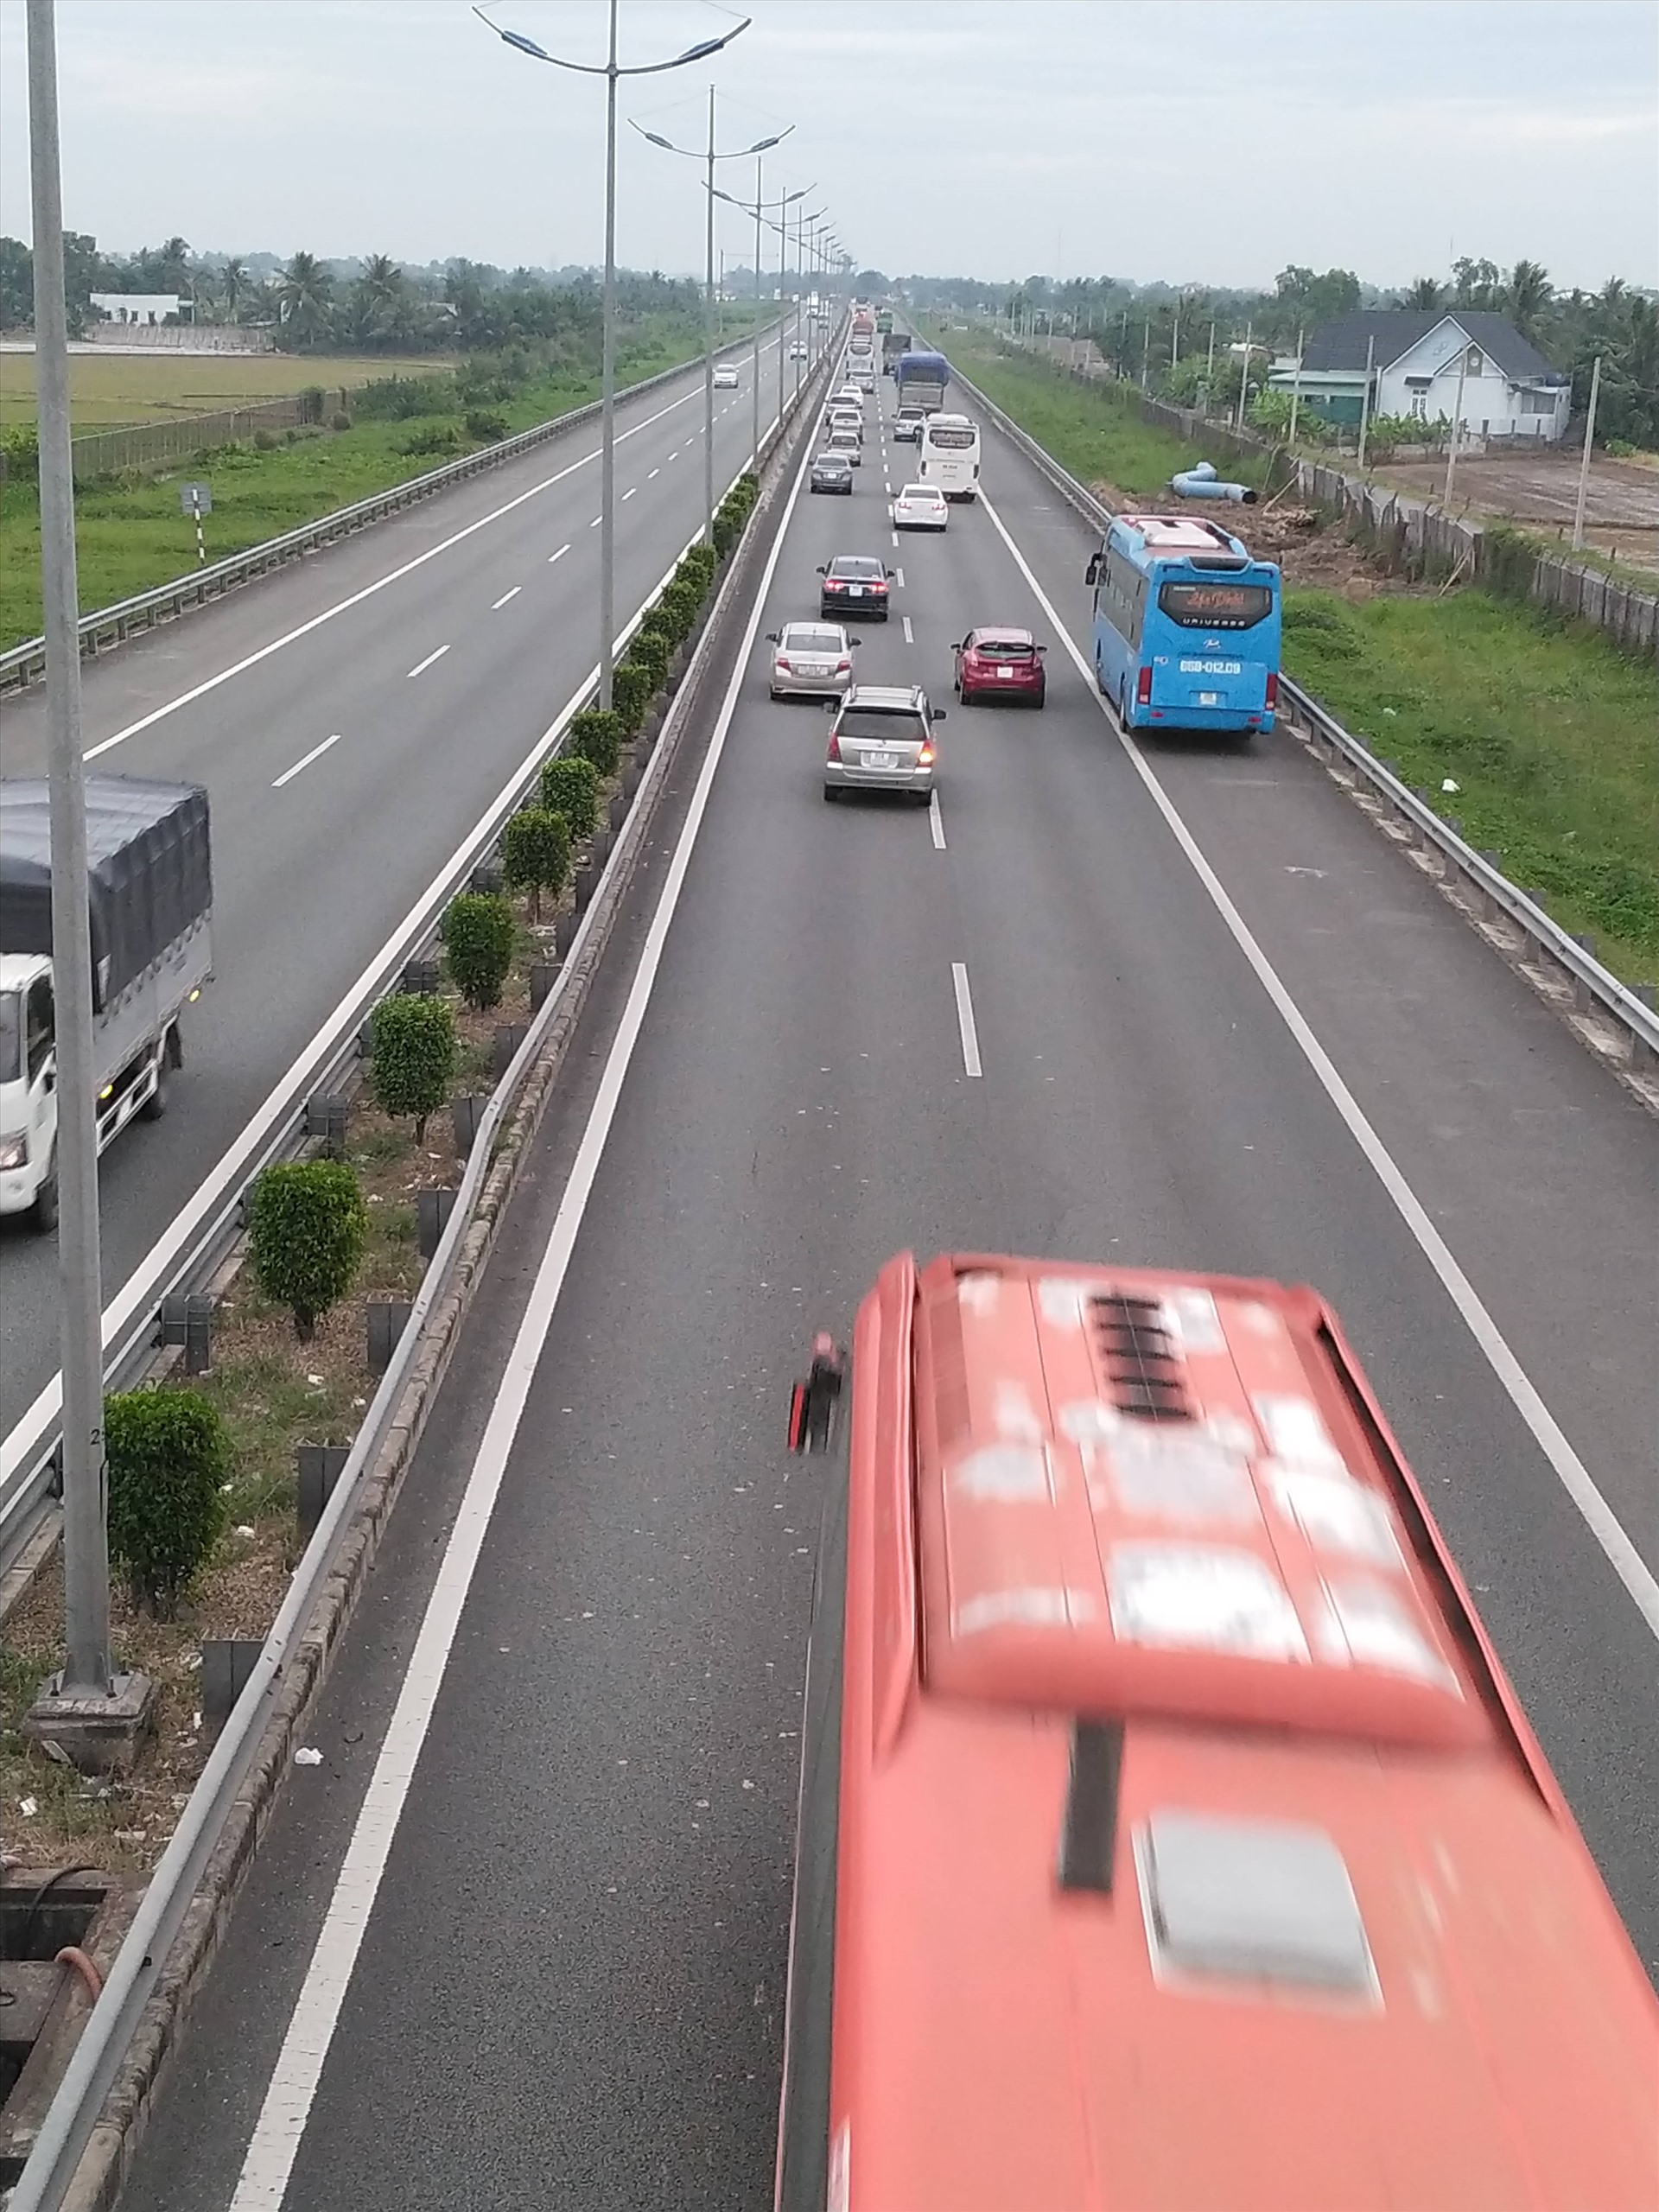 Cao tốc TP.HCM - Trung Lương tạm dừng thu phí từ đầu năm 2019. Kể từ đó, lượng xe tập trung lên đường rất cao, đặc biệt là xe tải trọng nặng, dẫn đến tai nạn giao thông tăng cao, đường mau xuống cấp.